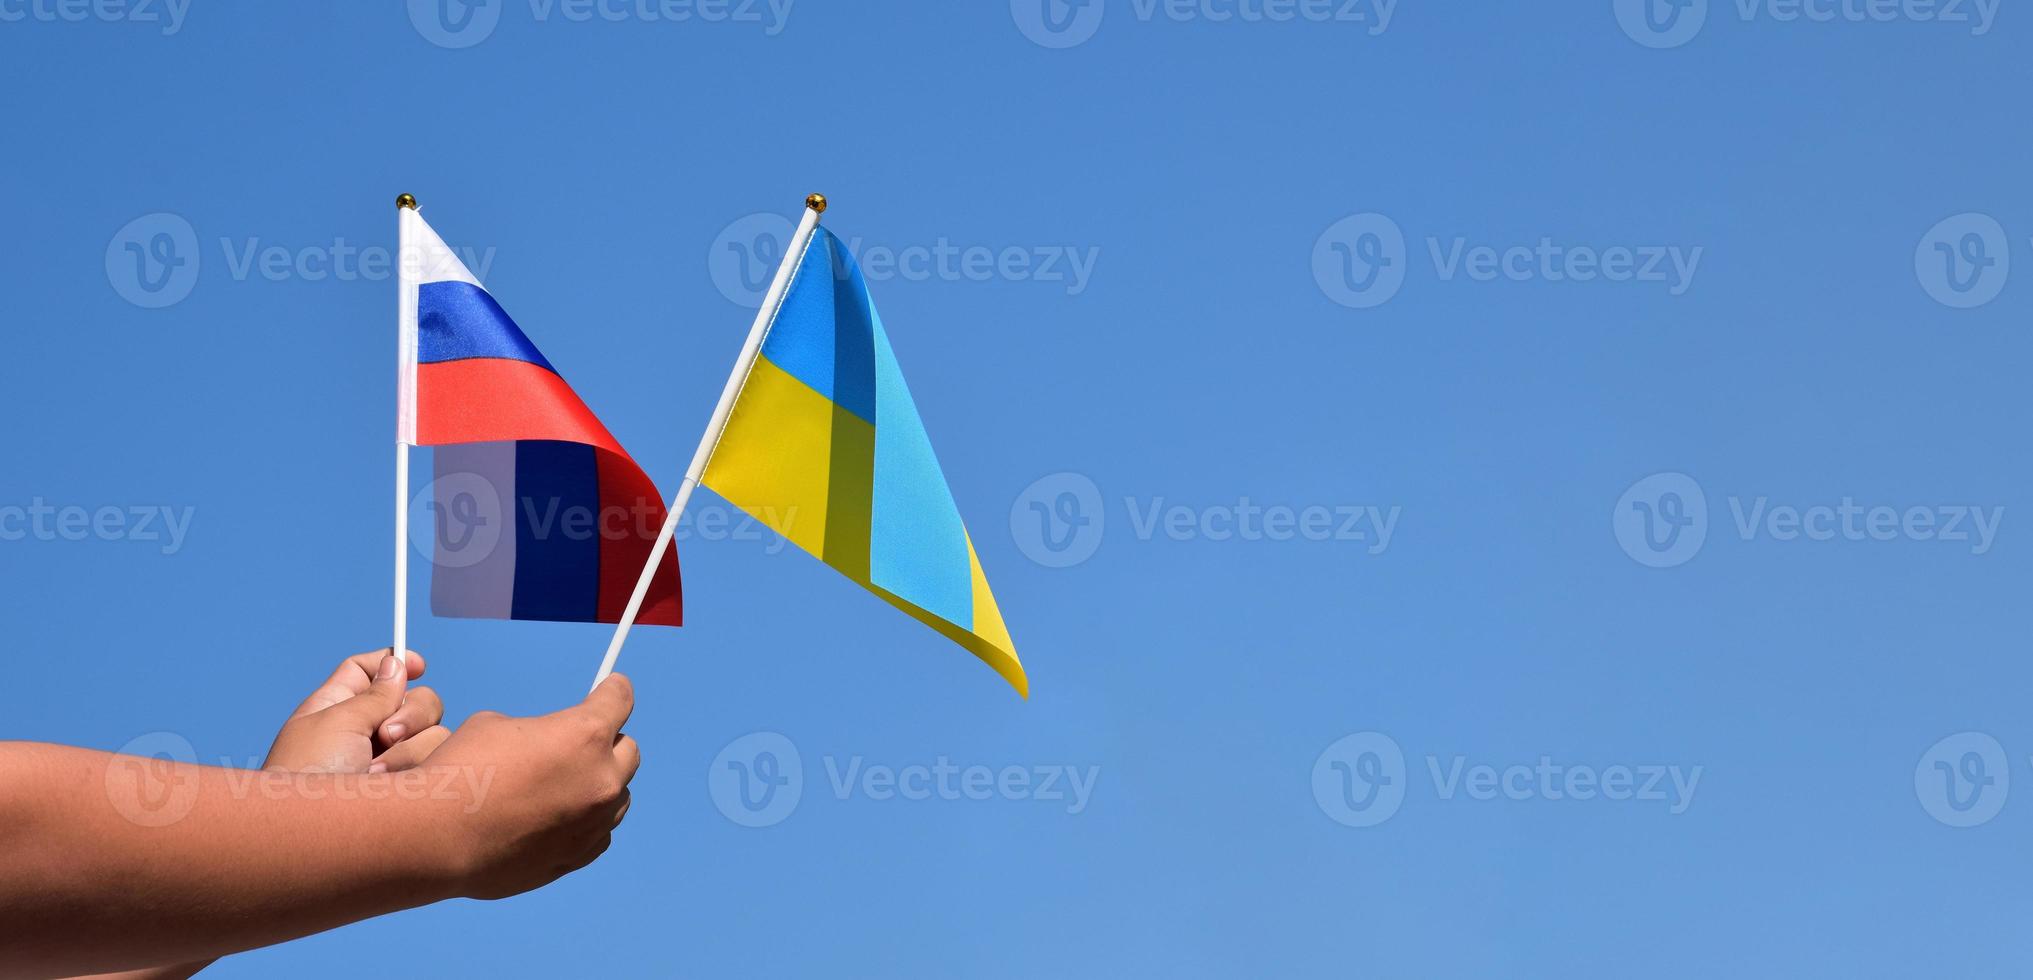 russland-flagge und ukraine-flagge, in den händen halten, blauer himmelshintergrund, konzept zur stoppung des krieges zwischen russland und der ukraine, weicher und selektiver fokus, kopierraum. foto